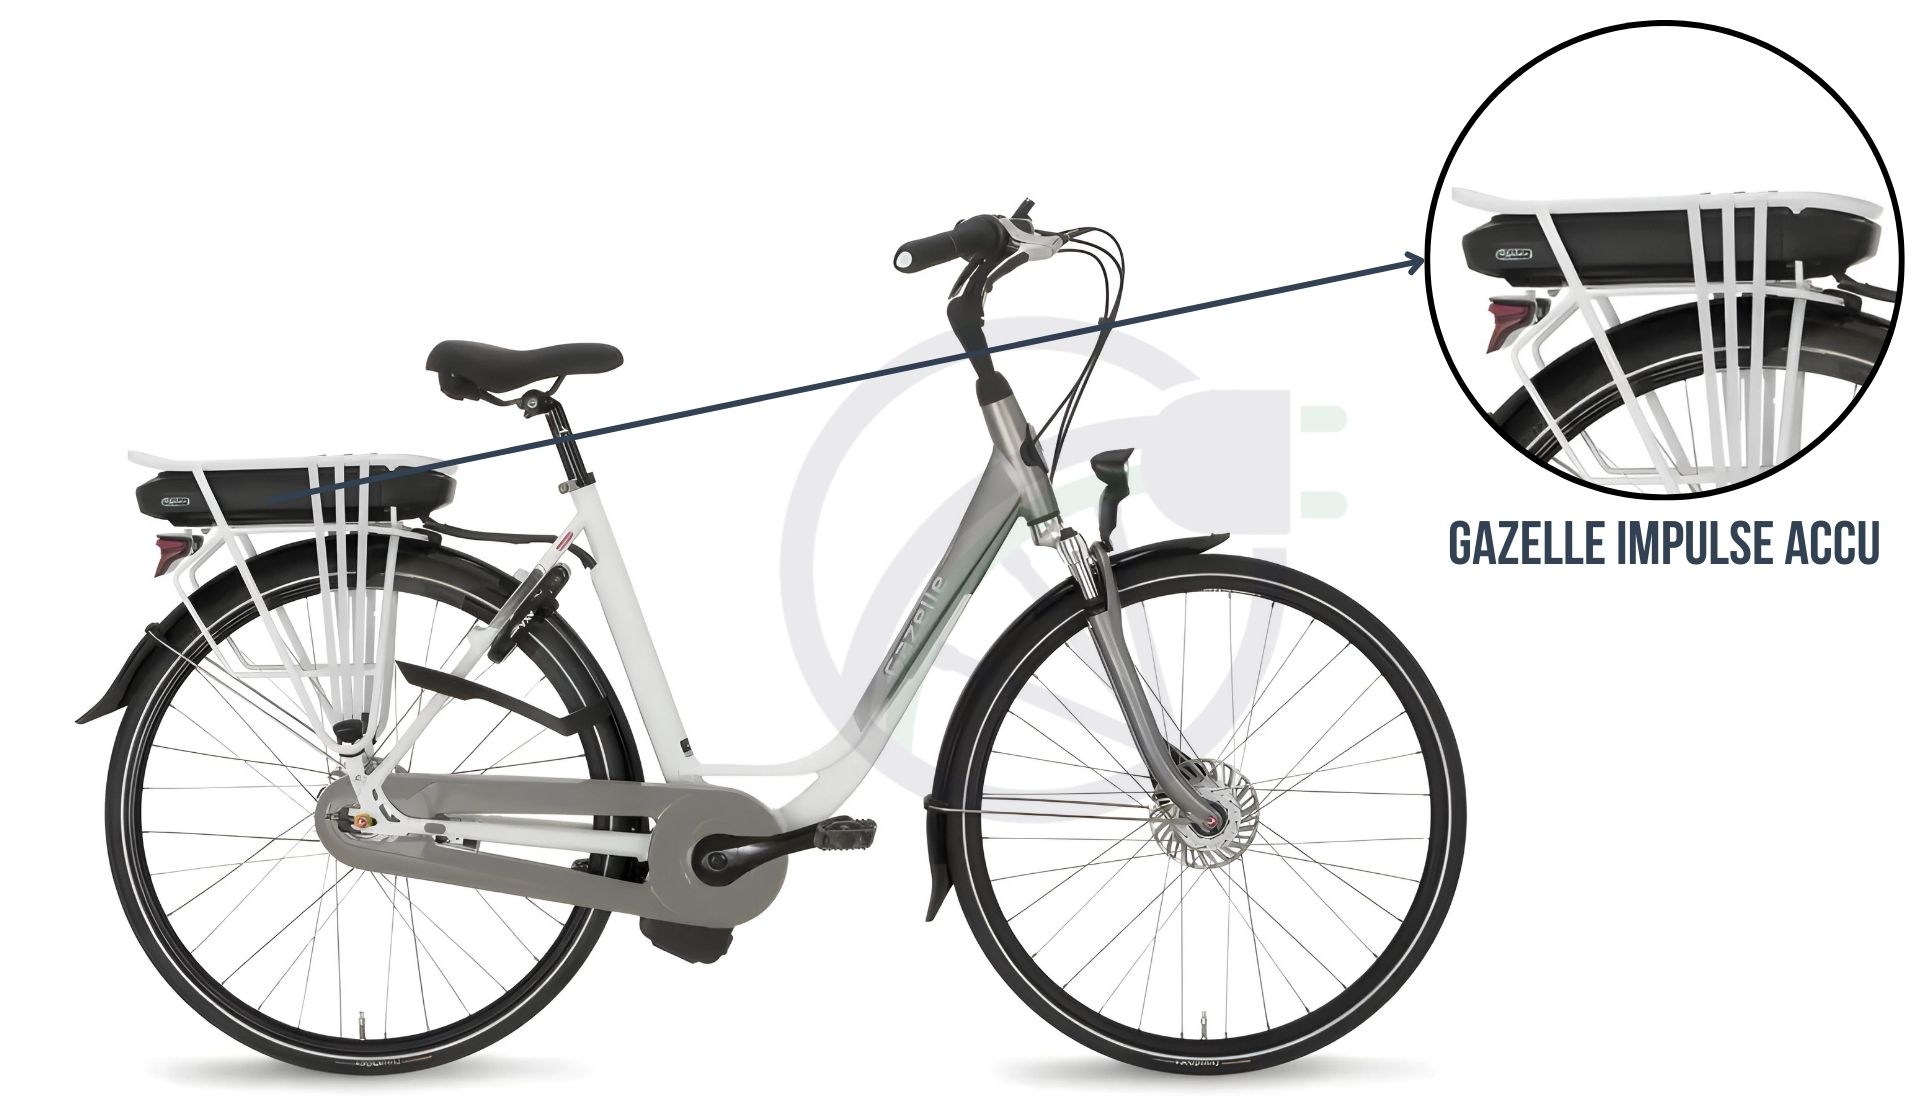 Afbeelding van een Gazelle fiets met daarbij uitgelicht welke accu er in de fiets kan. DIt is namelijk de Gazelle Impulse accu. Deze is er in verschillende capaciteiten, namelijk de Gazelle Impulse Platina accu, Gazelle Impulse goud accu en de Gazelle Impulse Zilver accu.